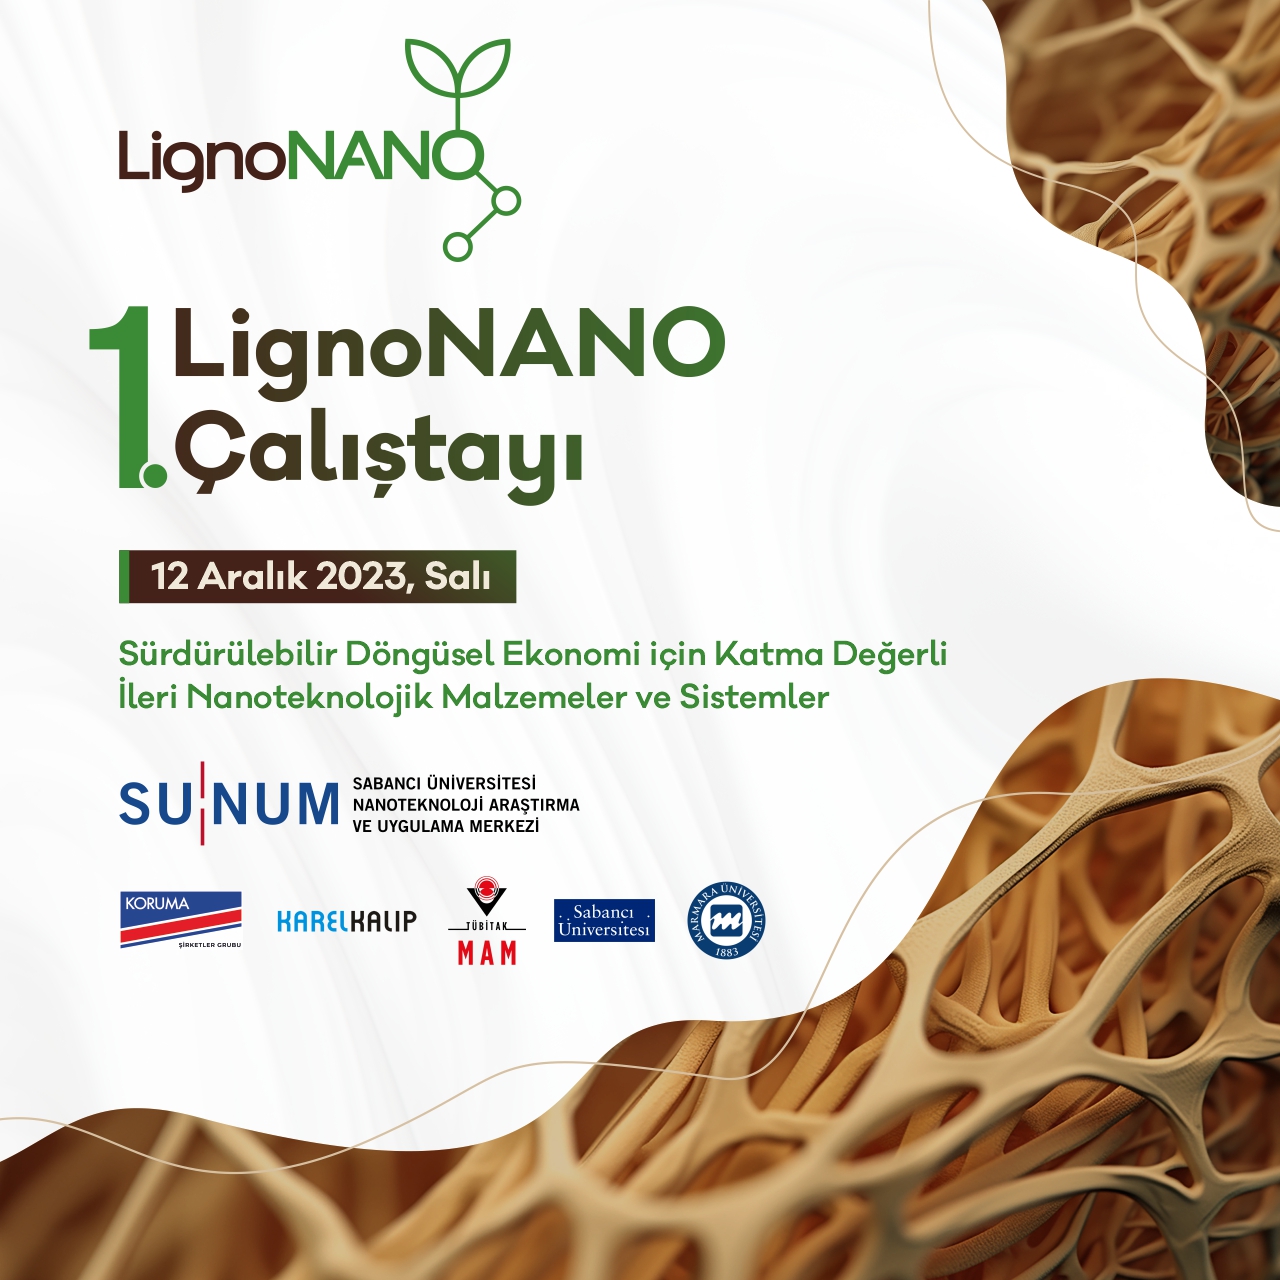 1. LignoNANO Çalıştayı 12 Aralık'ta yapılacak